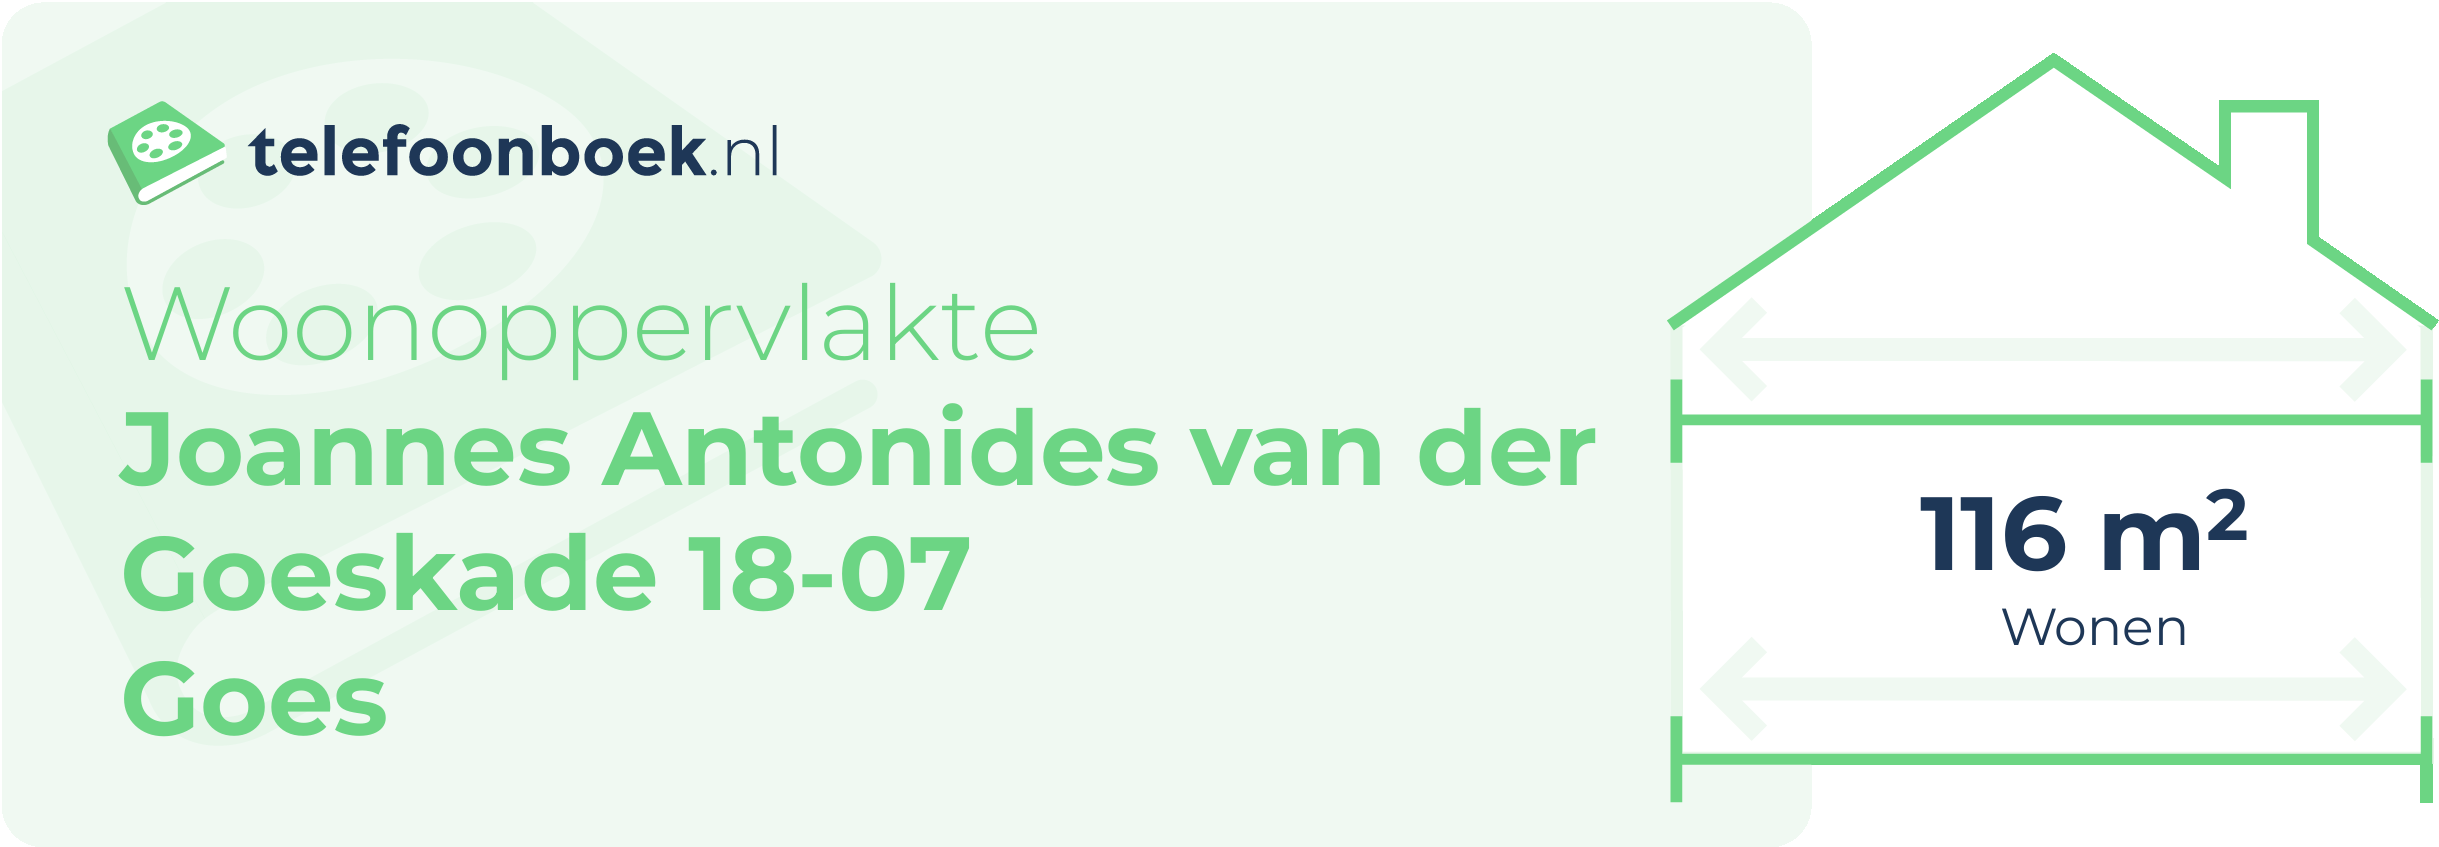 Woonoppervlakte Joannes Antonides Van Der Goeskade 18-07 Goes